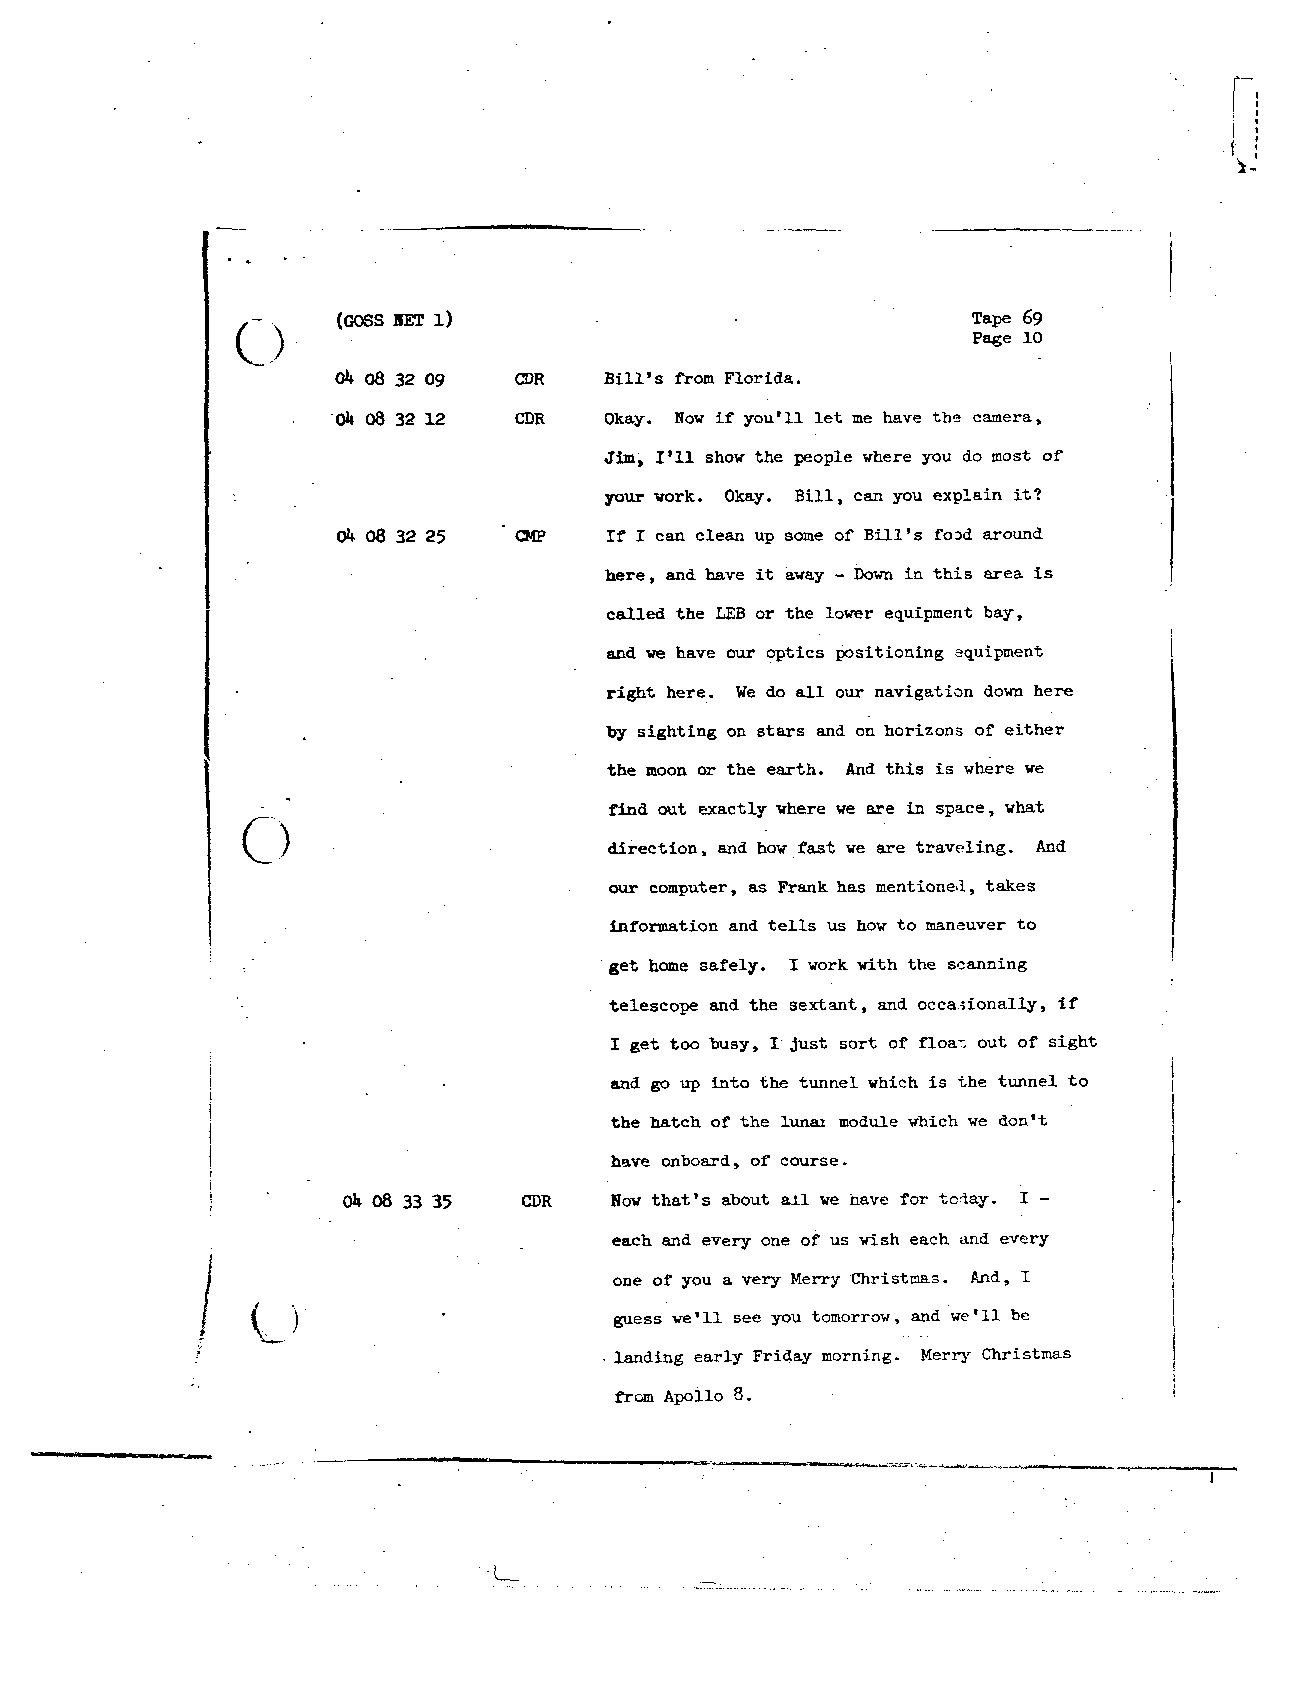 Page 556 of Apollo 8’s original transcript